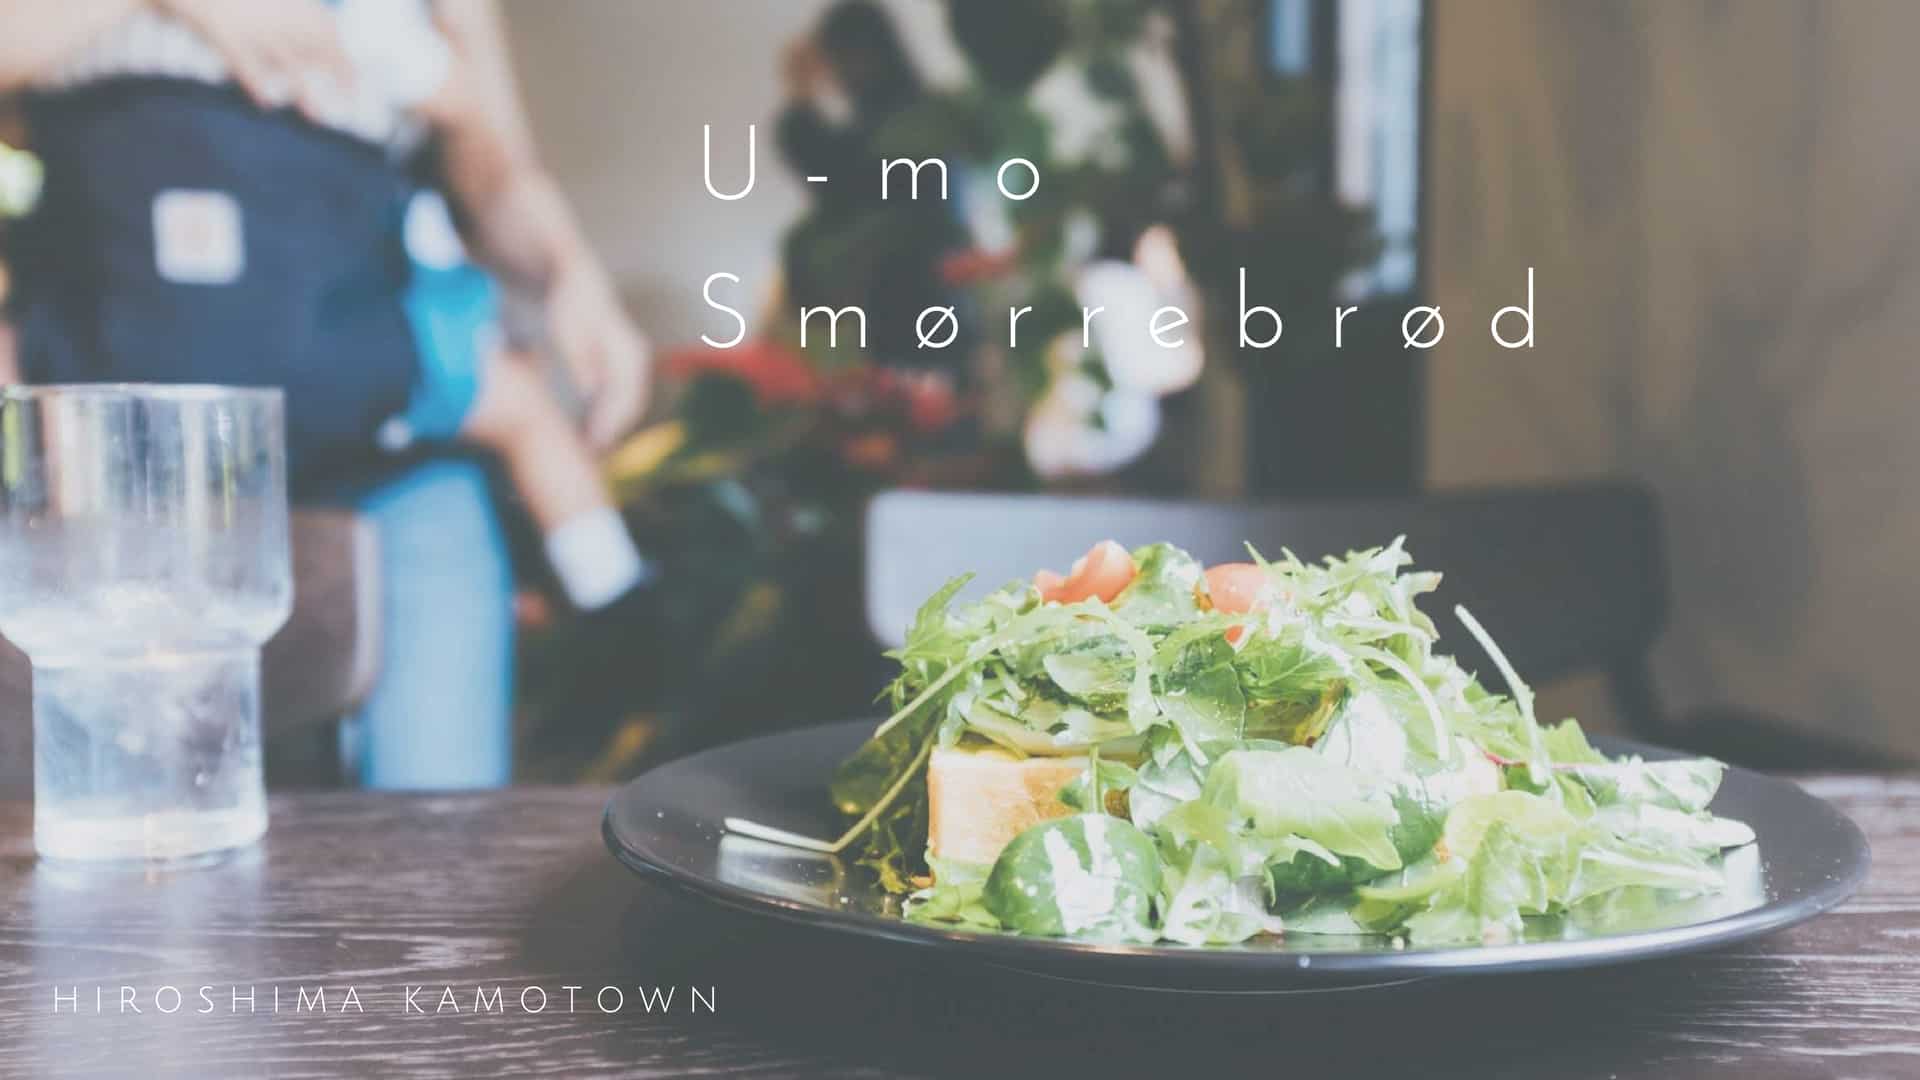 『U-mo(ウーモ）』で北欧風スモーブローを堪能【福山市加茂町】